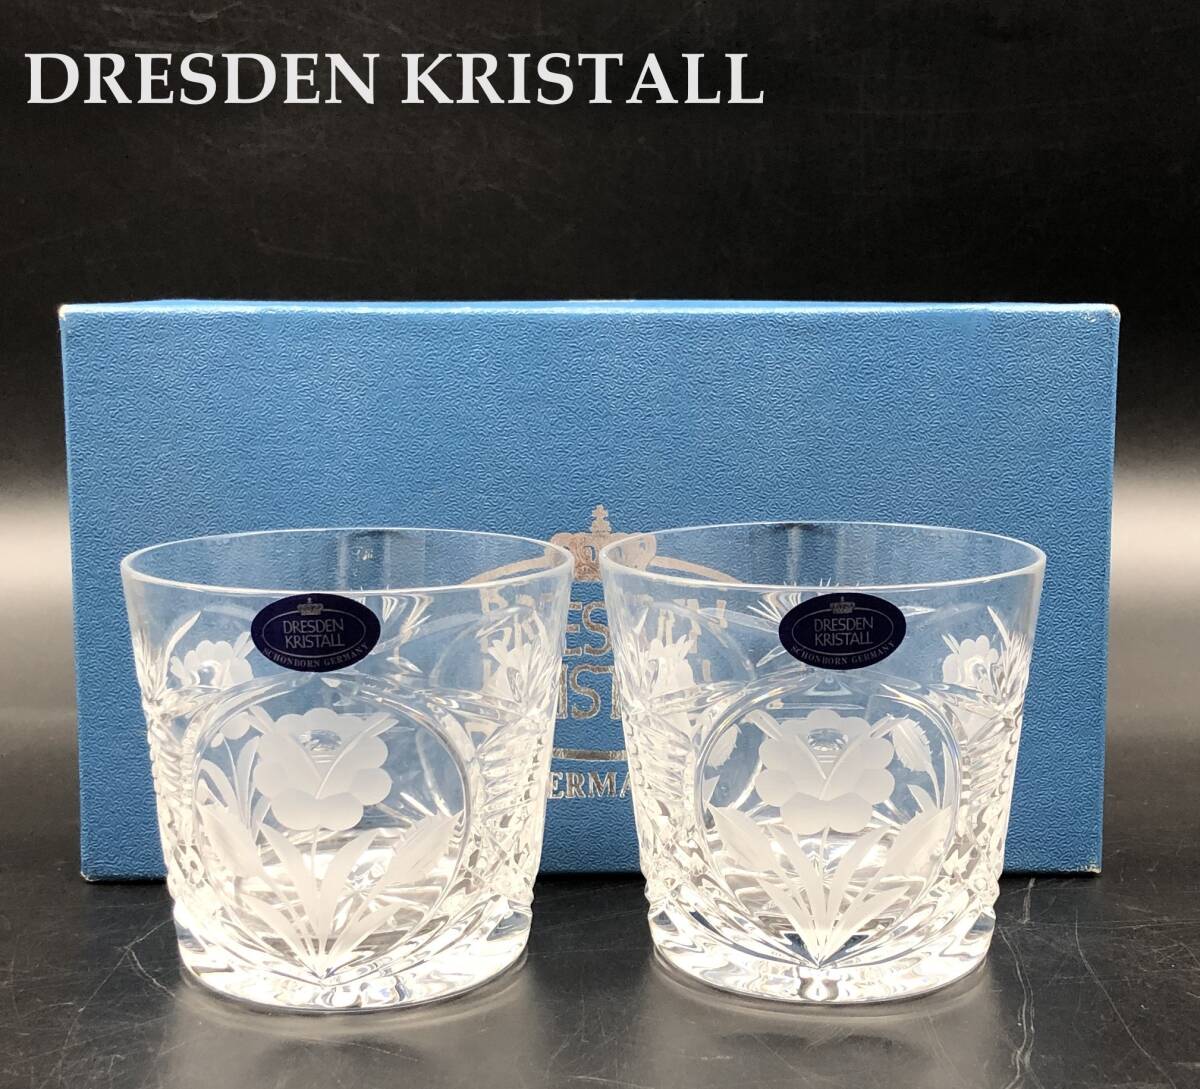 7701904-3【未使用】DRESDEN KRISTALL/GERMANY/ドレスデンクリスタル/ロックグラス 2客セット/ペアグラス/グラス/クリスタルグラスの画像1